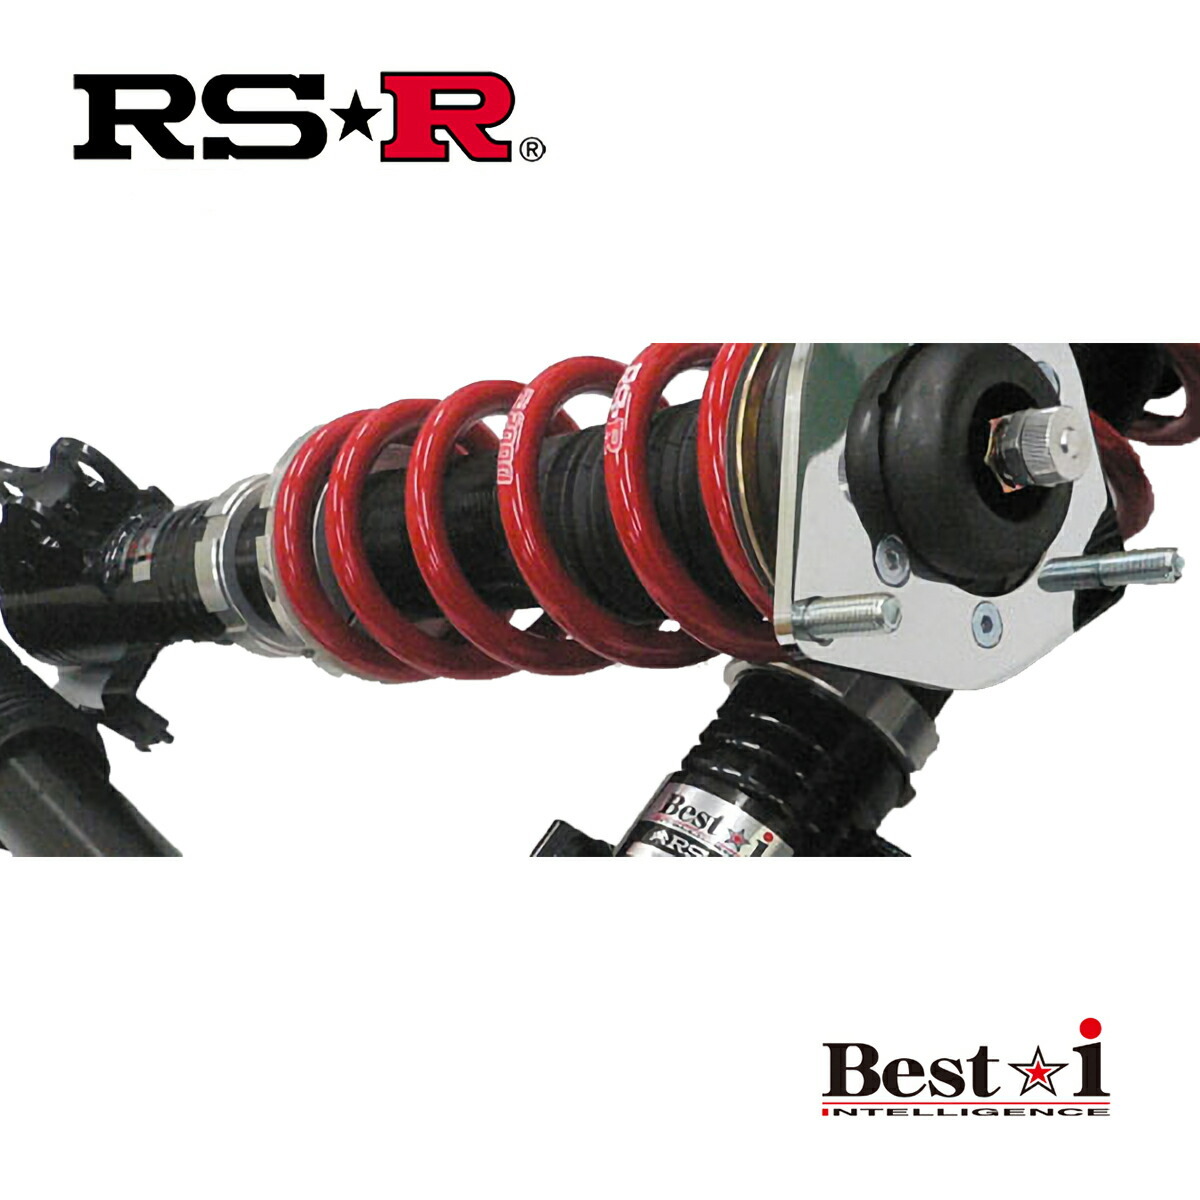 RSR リーフ ZE1 車高調 リア車高調整:スペーサー式 BIN503M RS-R Best-i ベストi_画像1